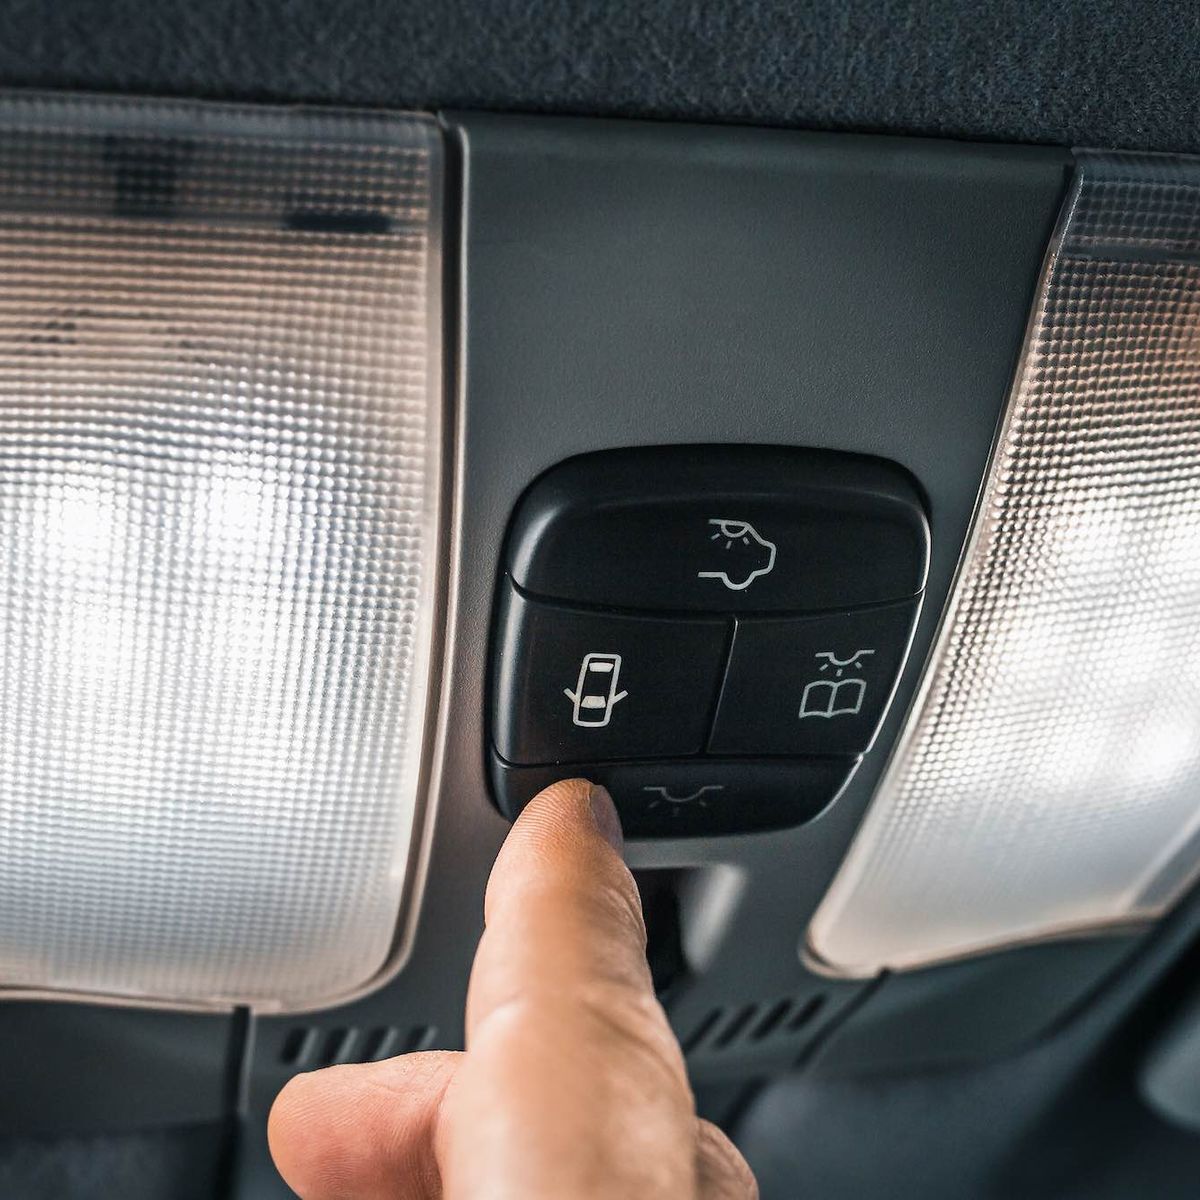 Pueden multarte por circular con la luz interior del coche encendida?